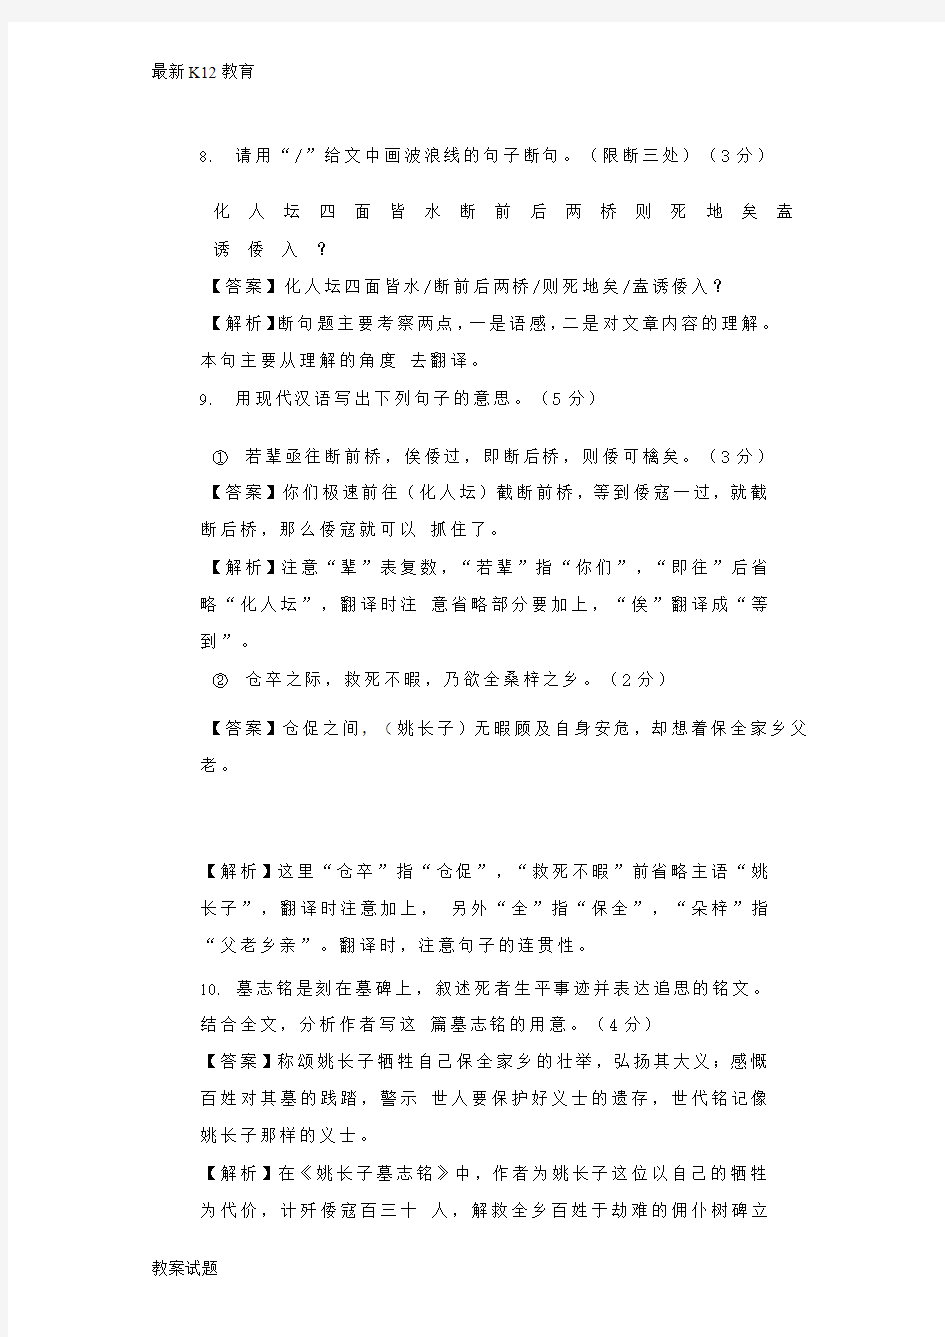 【配套K12】浙江省中考语文试题汇编： 03文言文阅读